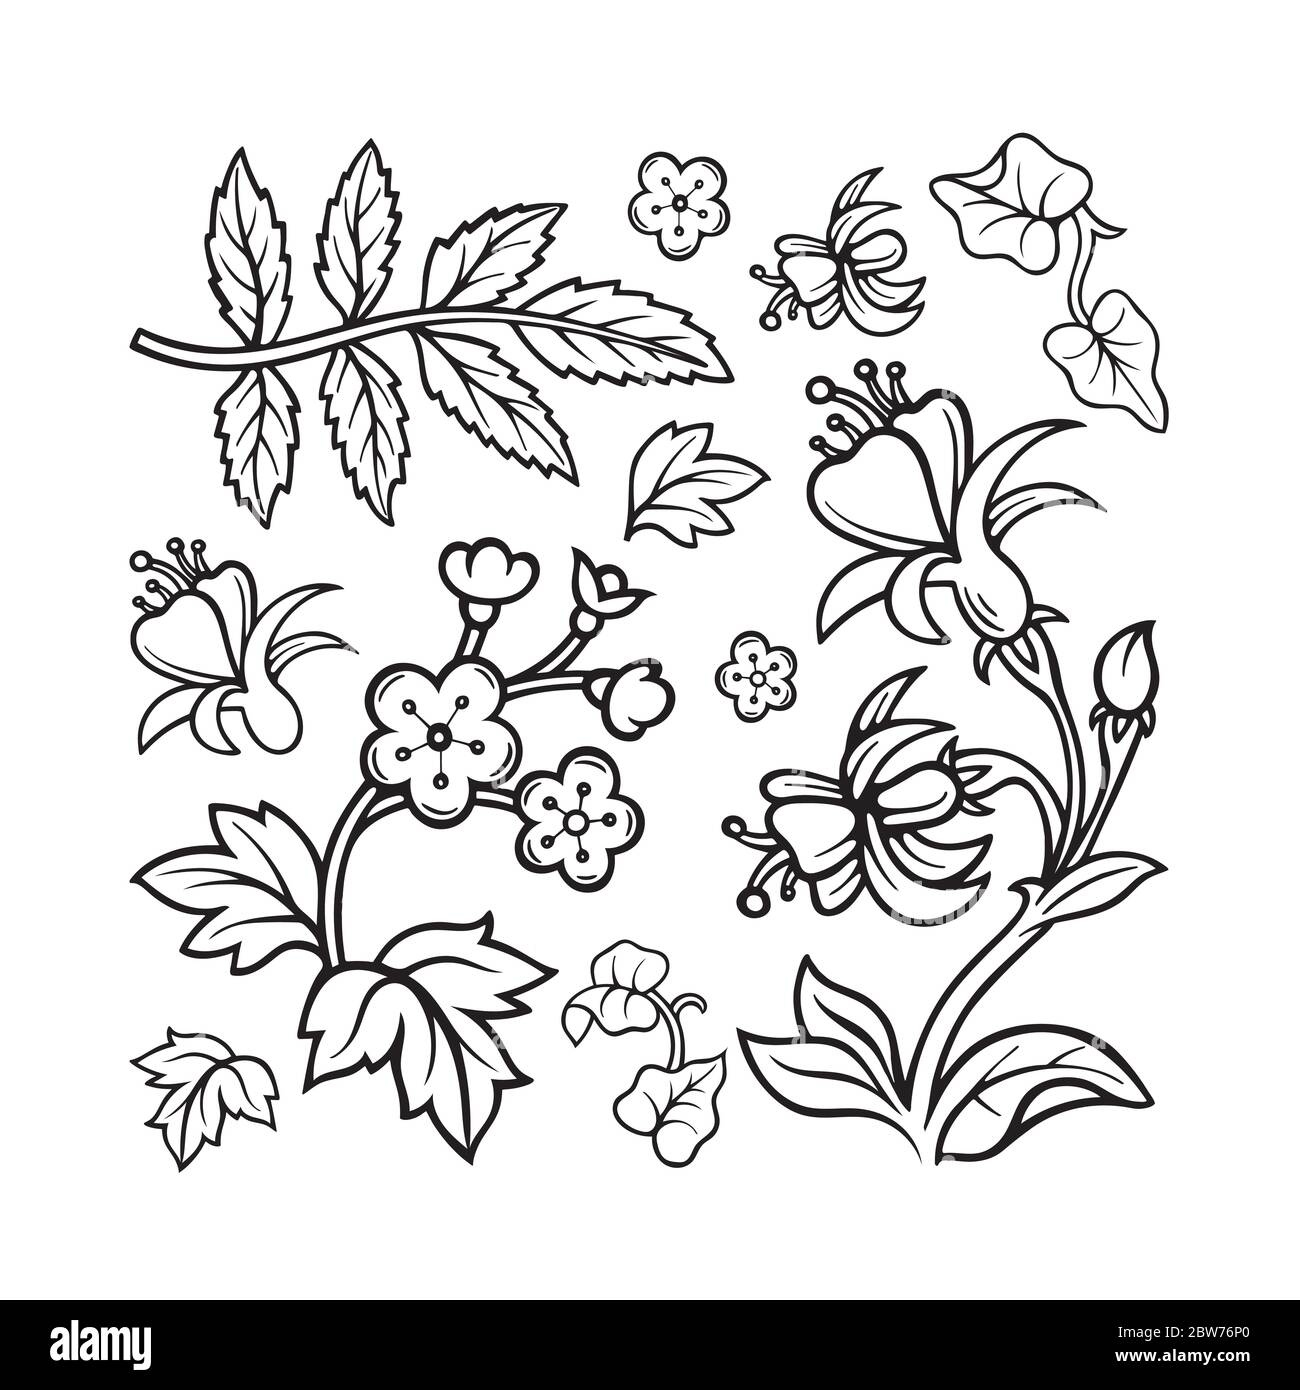 Blumen. Doodle Blumen und Pflanzen Vektor-Illustrationen Set. Handgezeichneter floraler Ornament Konstruktor. Teil des Sets. Stock Vektor